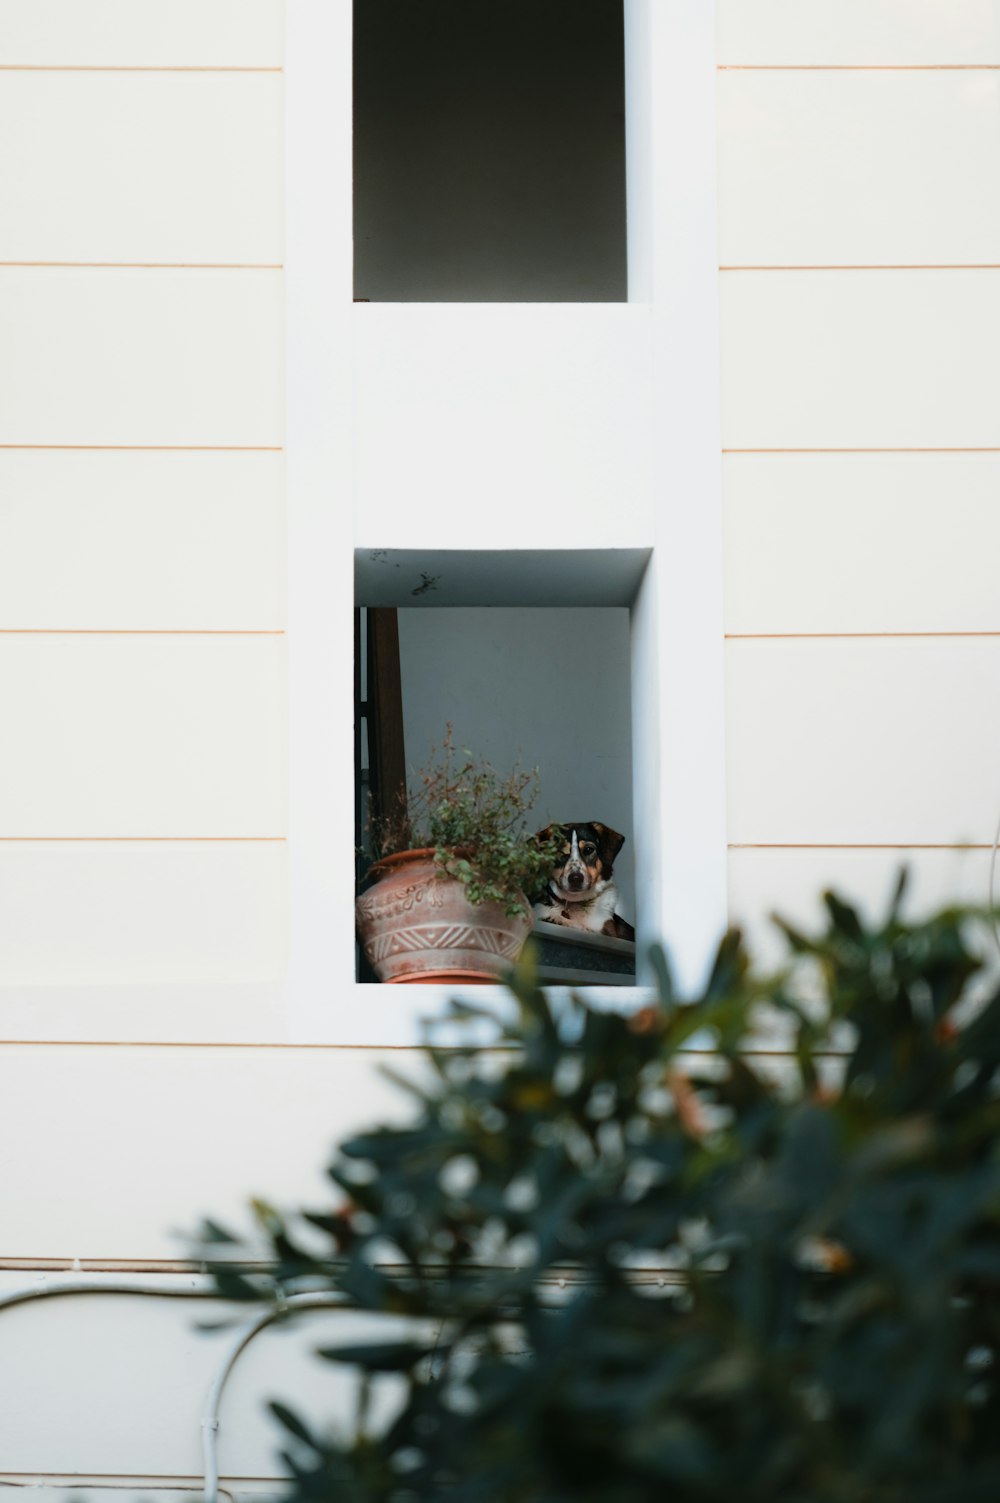 Eine Katze sitzt in einem Fenster eines Hauses